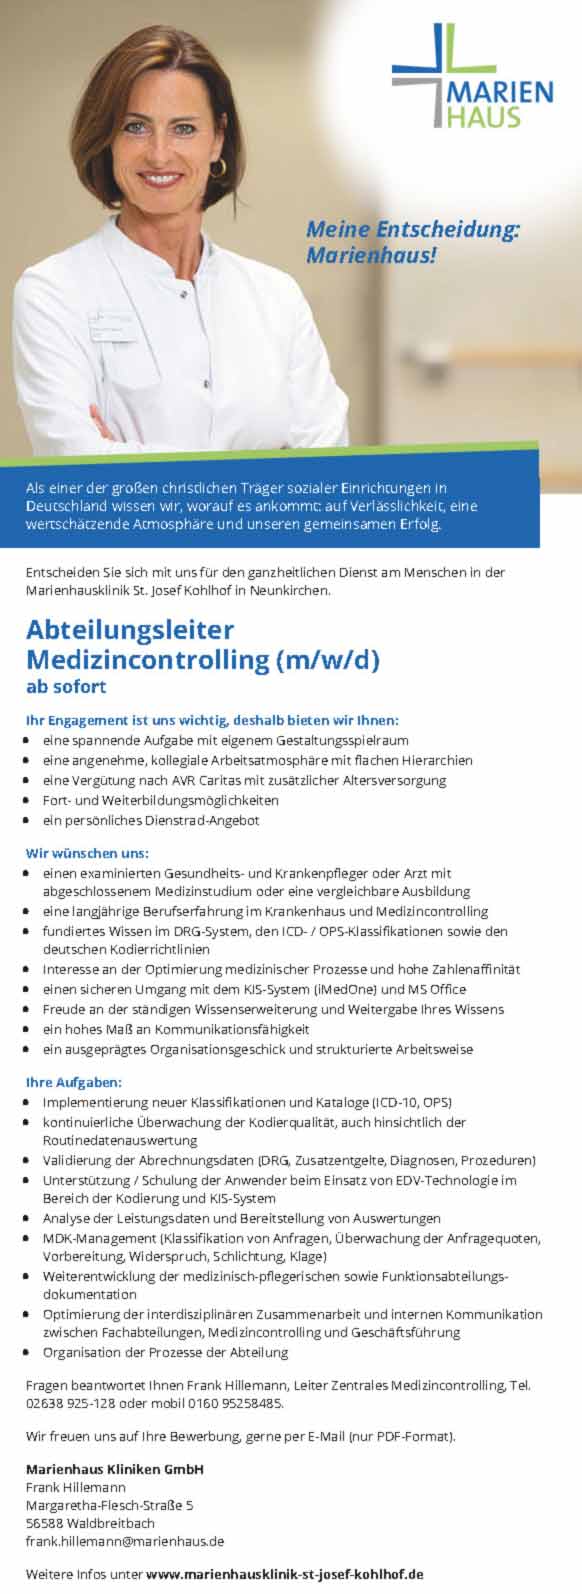 Marienhaus Kliniken GmbH Waldbreitbach: Abteilungsleiter Medizincontrolling (m/w/d)